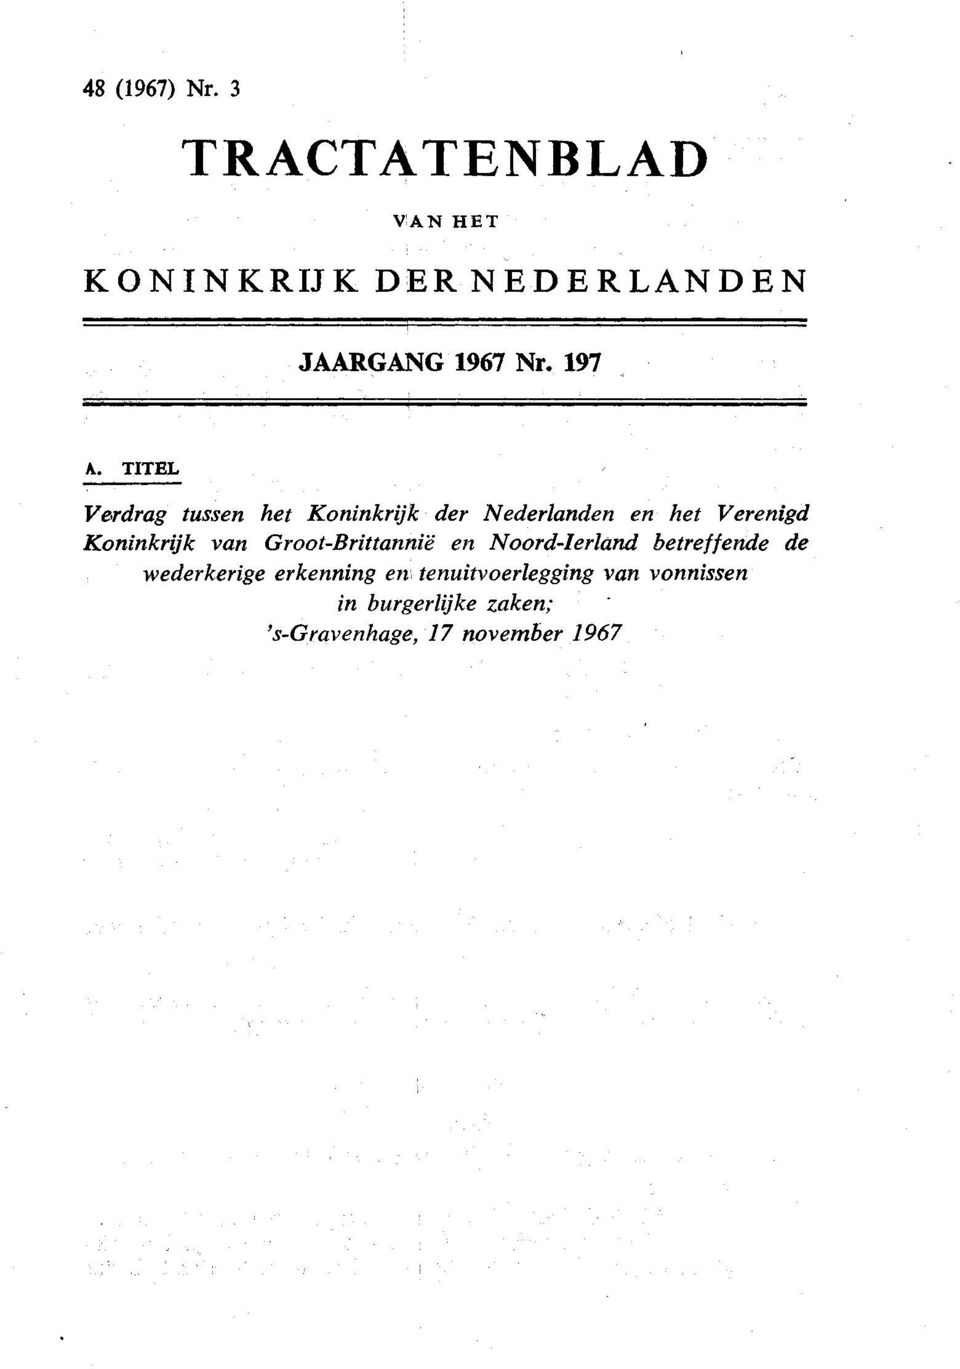 TITEL Verdrag tussen het Koninkrijk der Nederlanden en het Verenigd Koninkrijk van